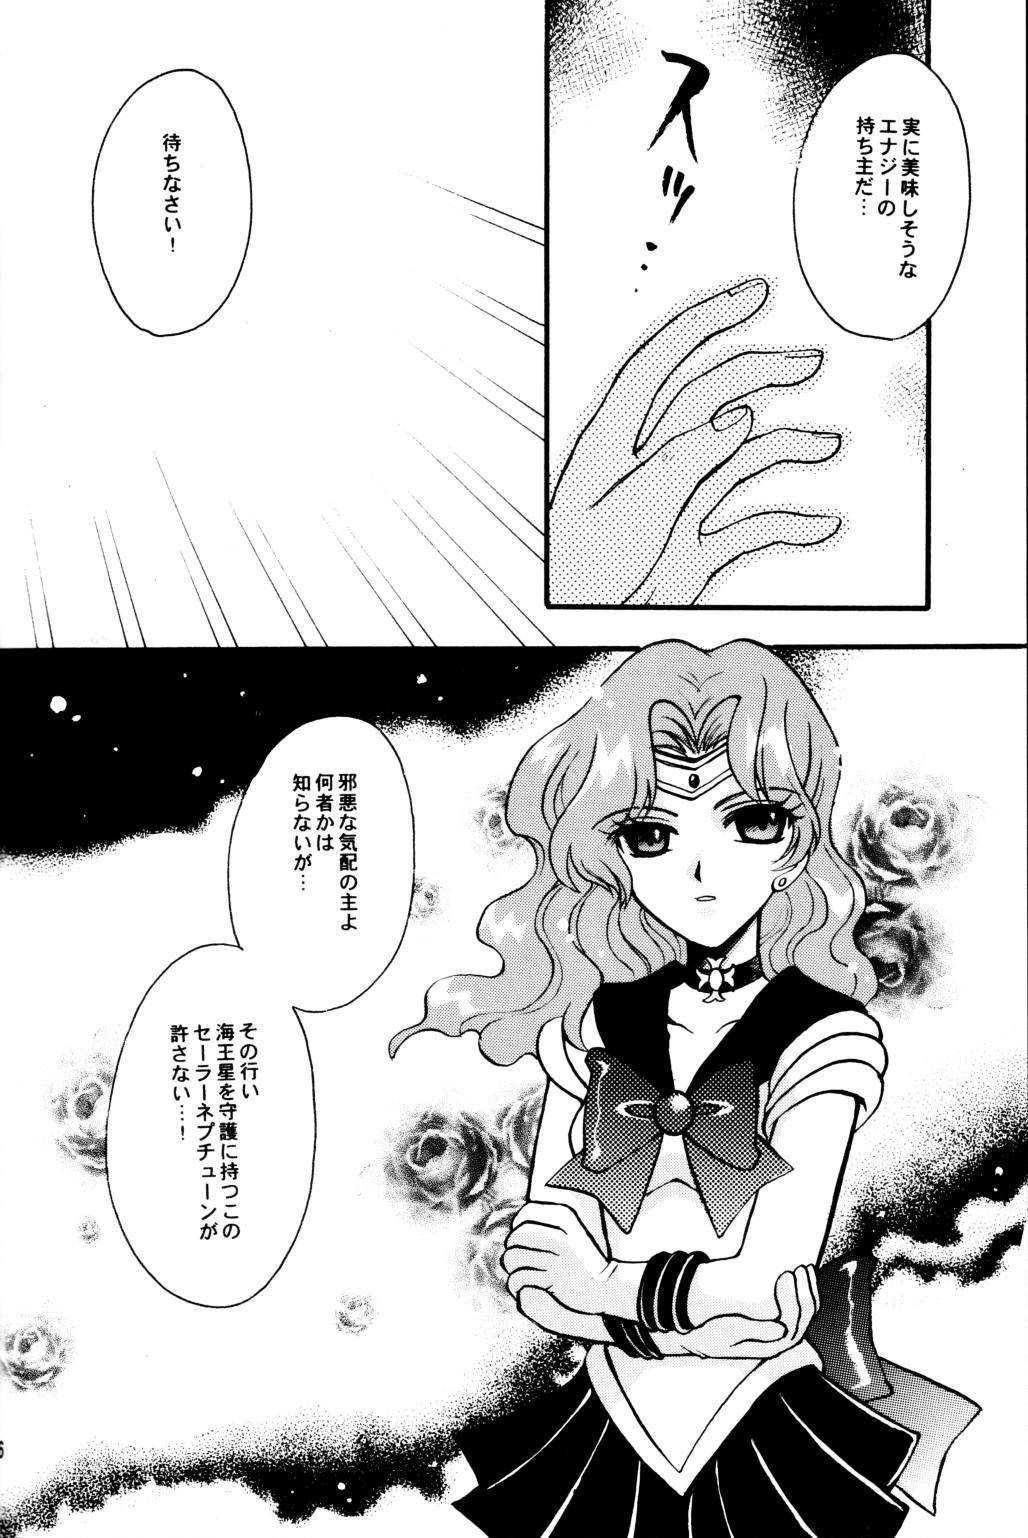 [Kotori Jimusho] Ave Maris Stella 1 (Sailor Moon) 